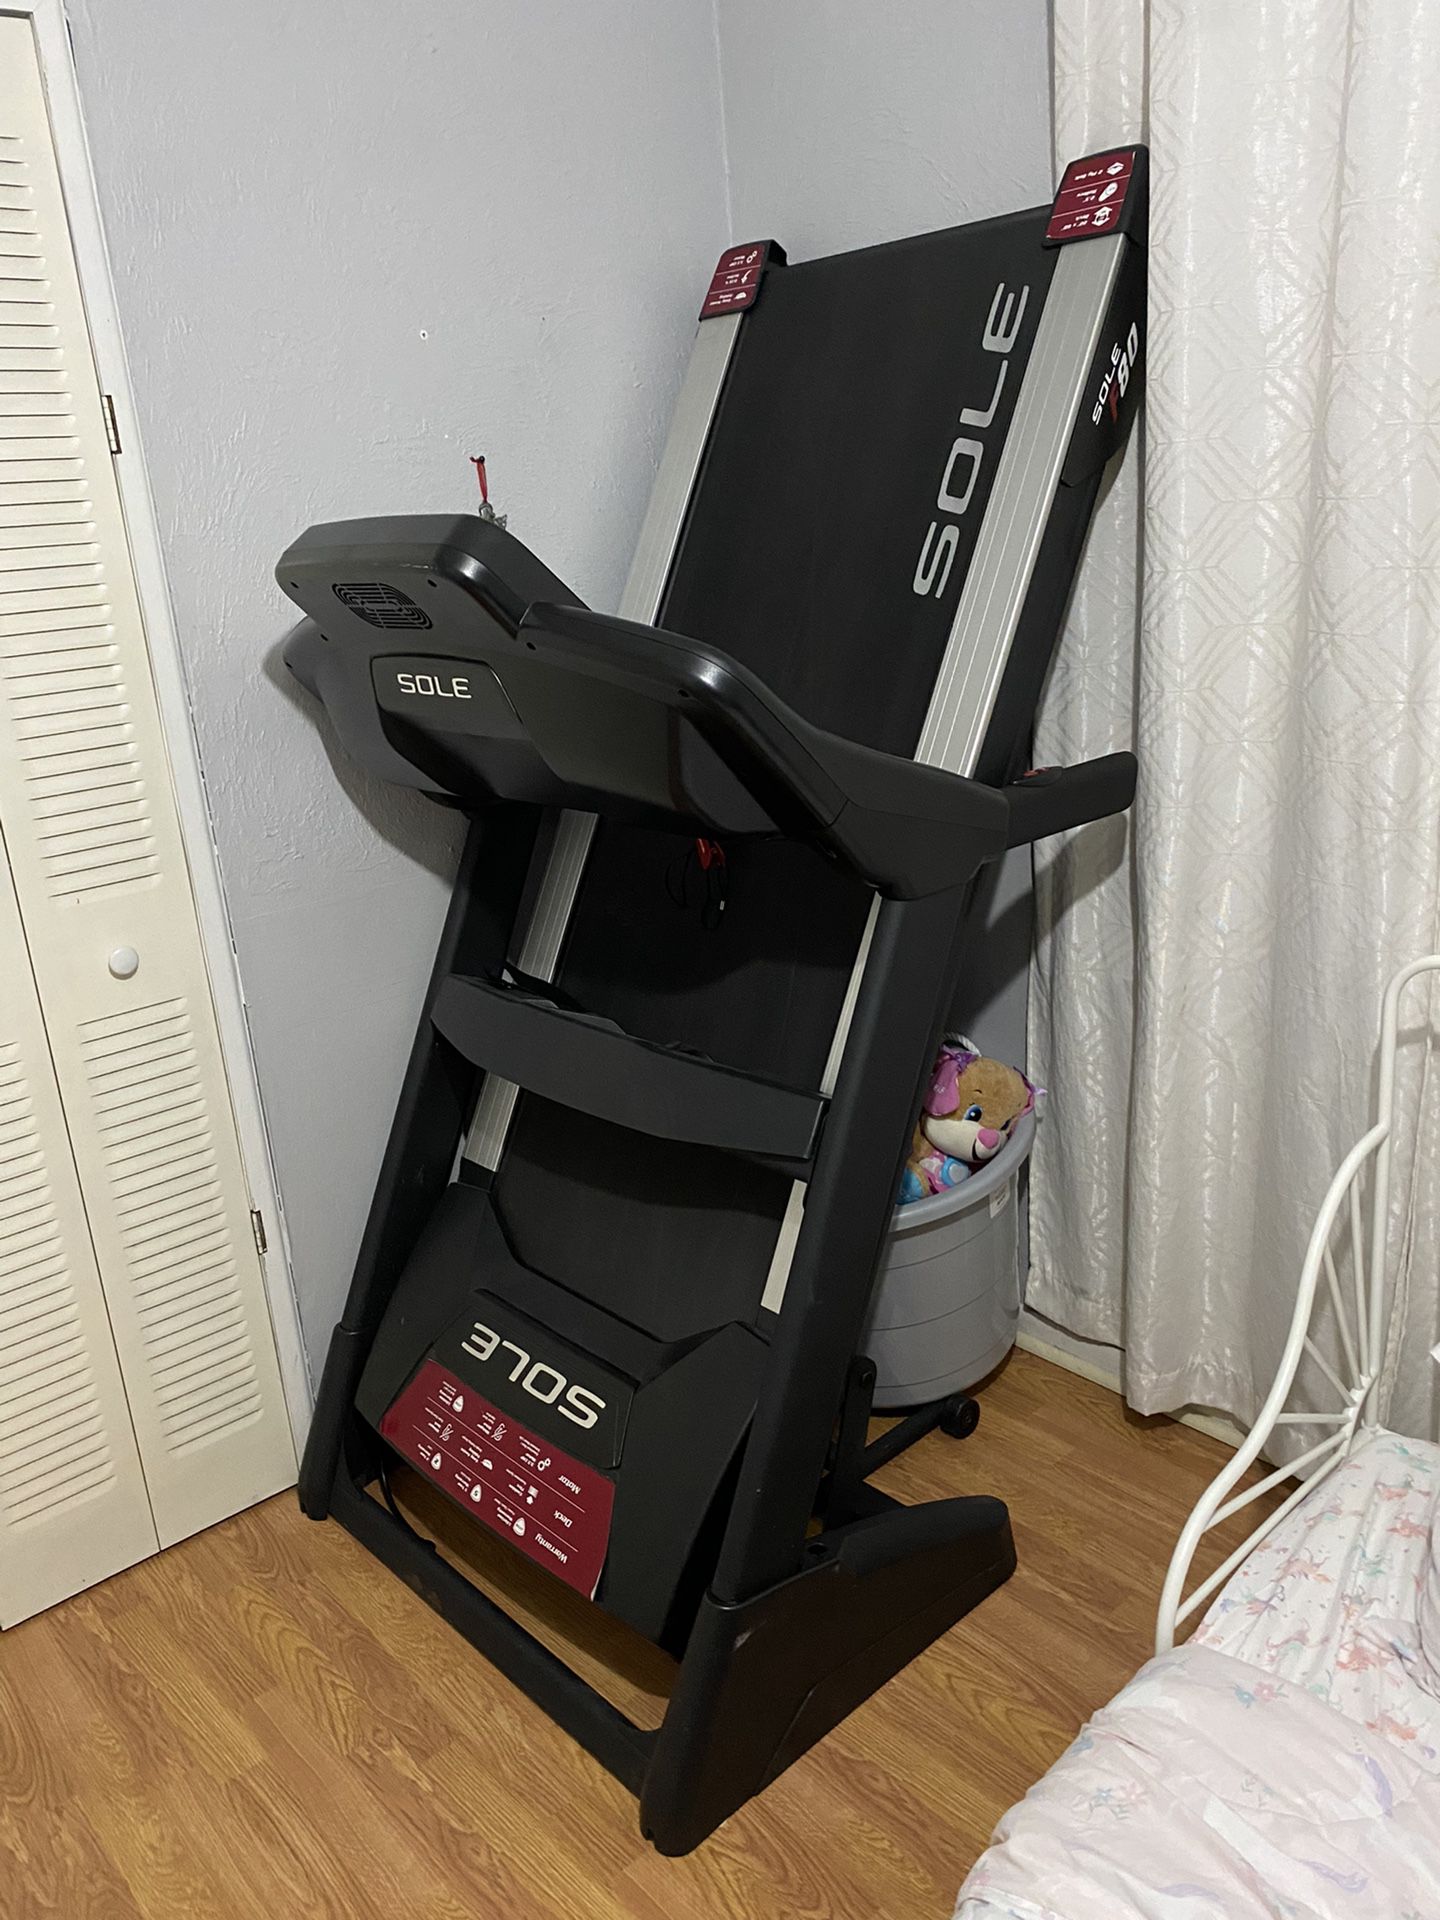 Sole F80 Treadmill 